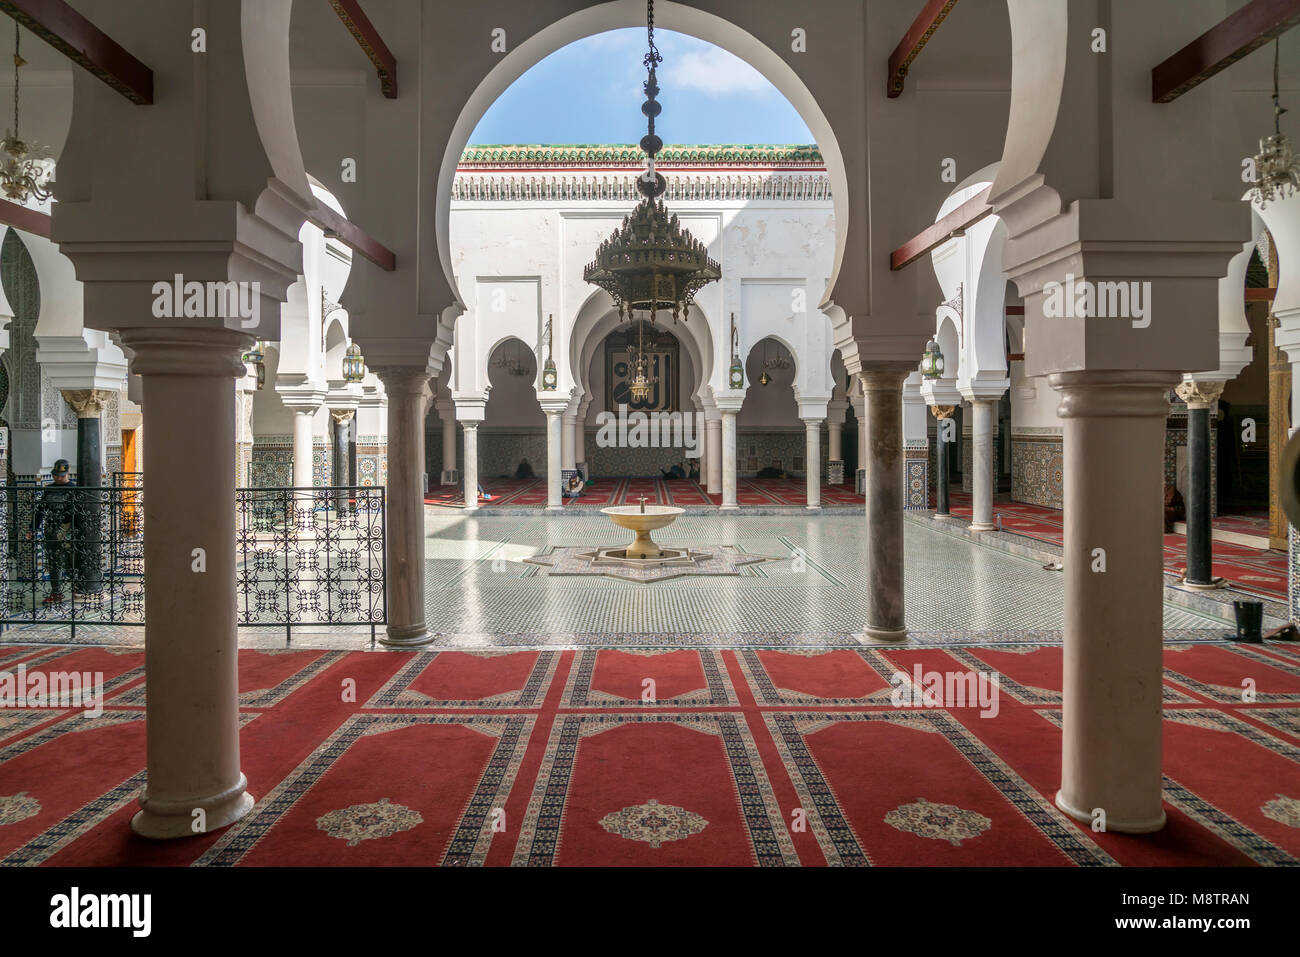 Innenhof der Moschee Kairaouine, Fes, Königreich Marokko, Afrika | Mosquée de Kairaouine courtyard, Fes, Royaume du Maroc, l'Afrique Banque D'Images